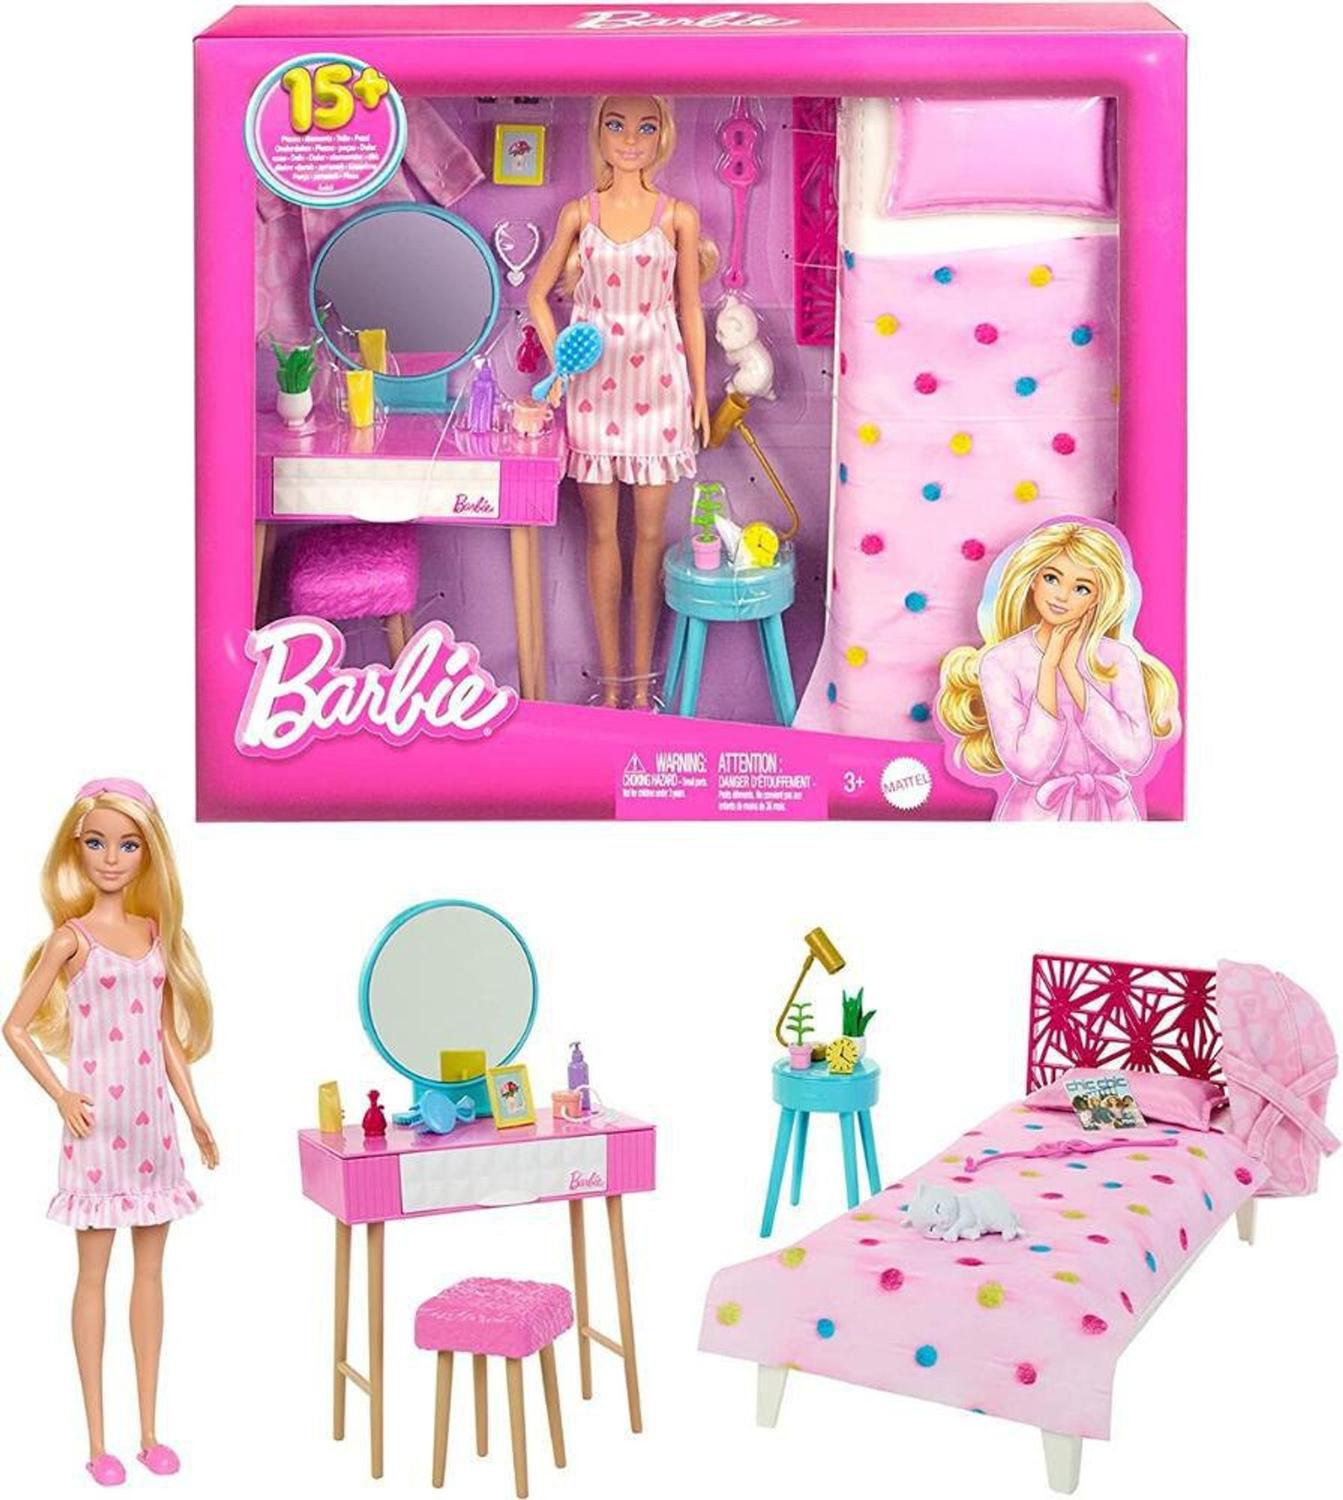 5 pontos para refletir sobre o filme da Barbie - Carlotas